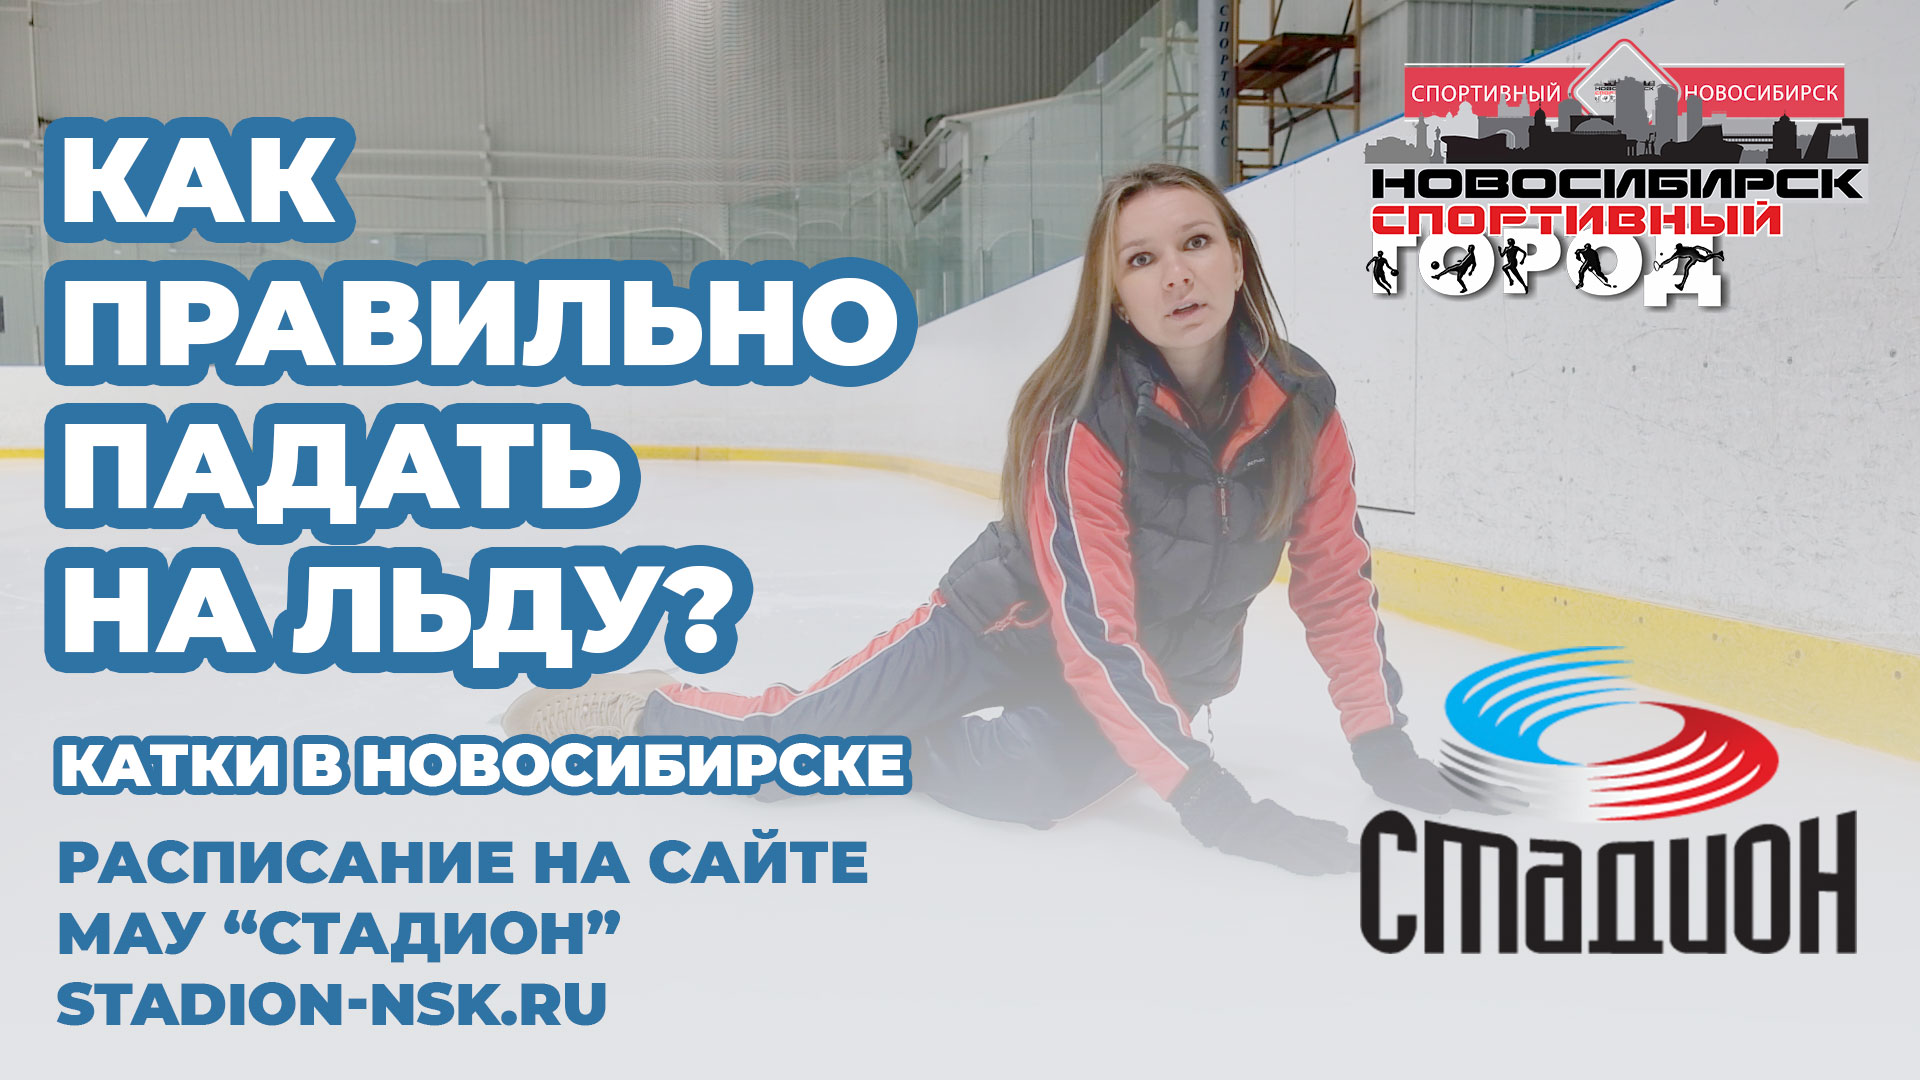 Как правильно падать на льду Катки в Новосибирске